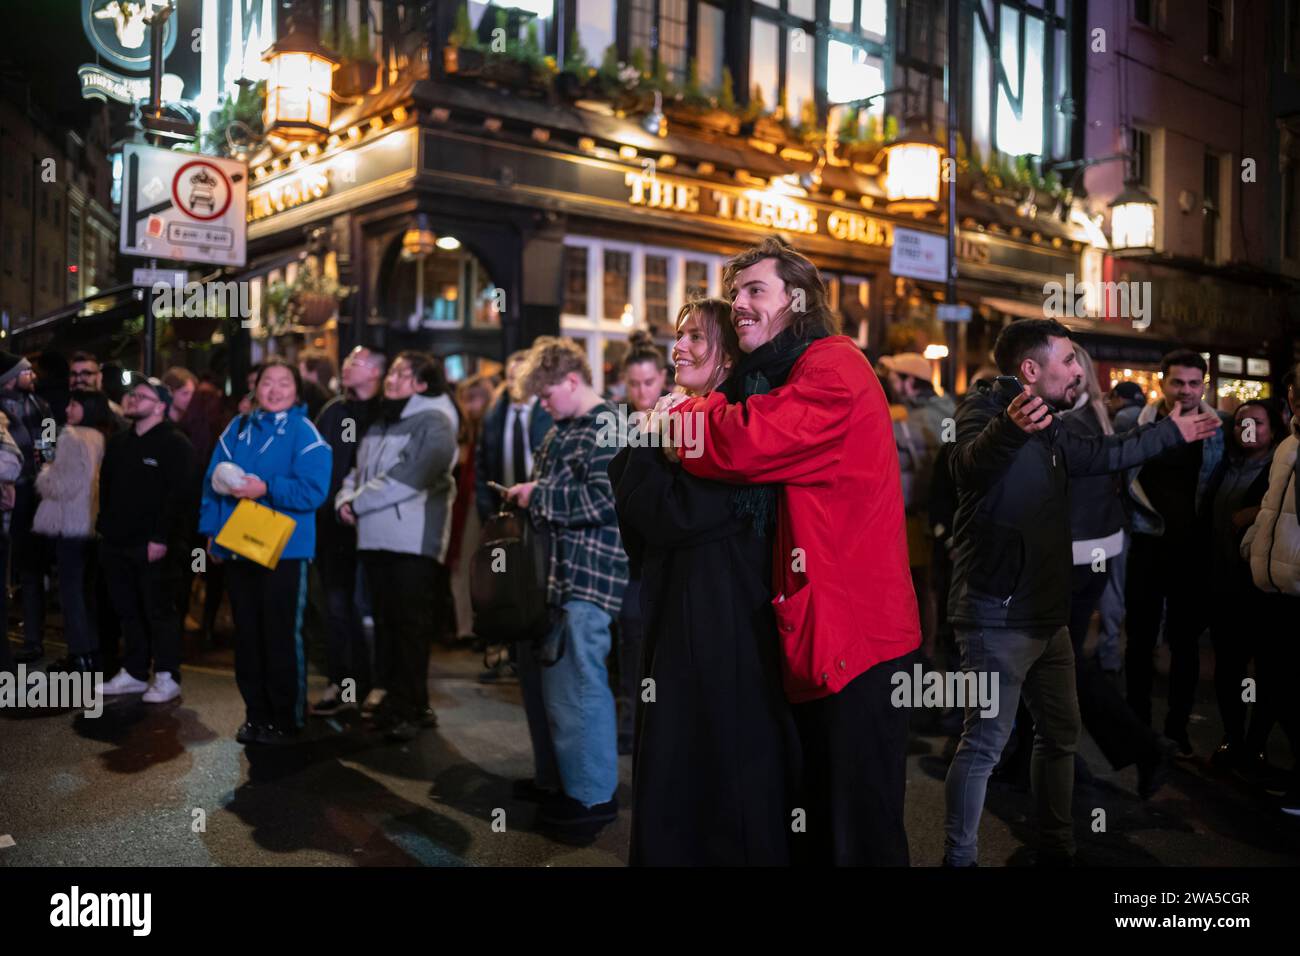 Les gens apprécient l'atmosphère de fête de la Saint-Sylvestre tandis qu'ils sont parmi la foule à Soho, le quartier West End de la capitale, Londres, Angleterre, Royaume-Uni. Banque D'Images